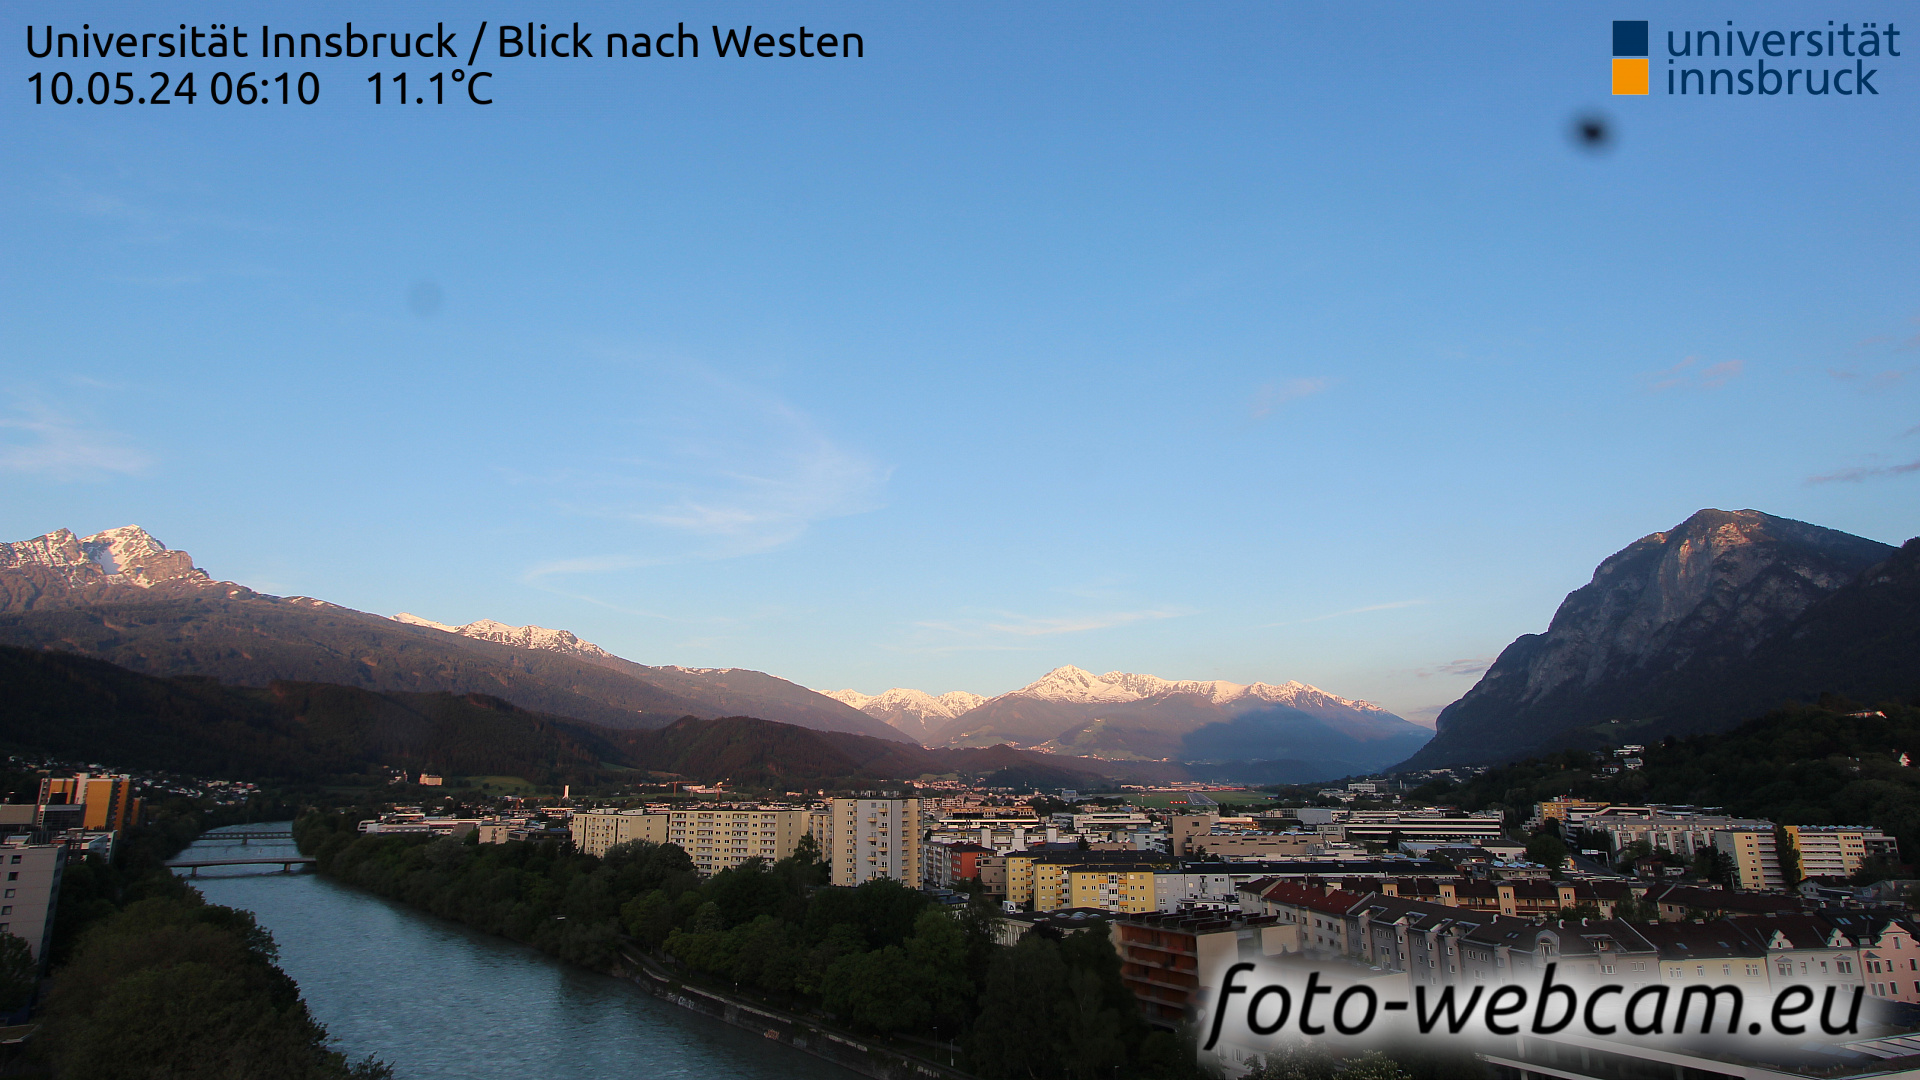 Innsbruck Di. 06:17